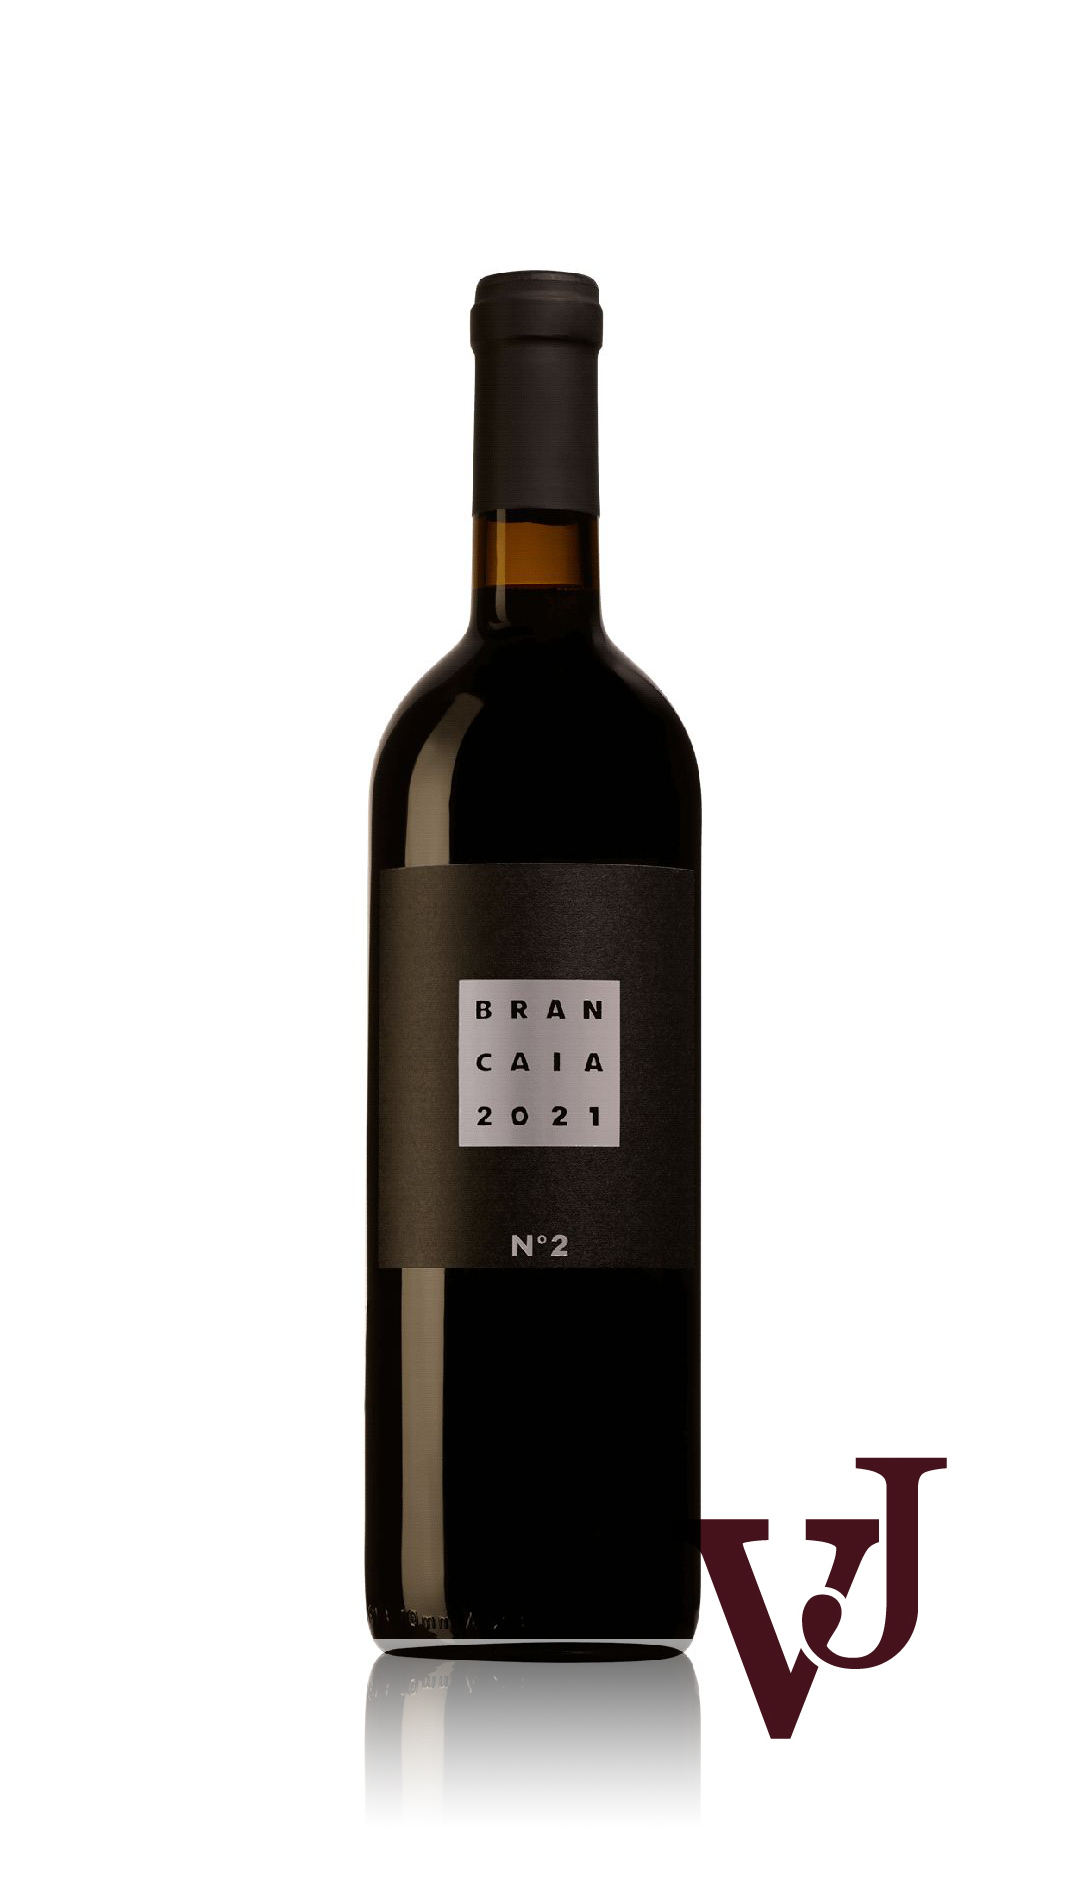 Vitt Vin - Brancaia No 2 2021 artikel nummer 9410001 från producenten Casa Brancaia från området Italien